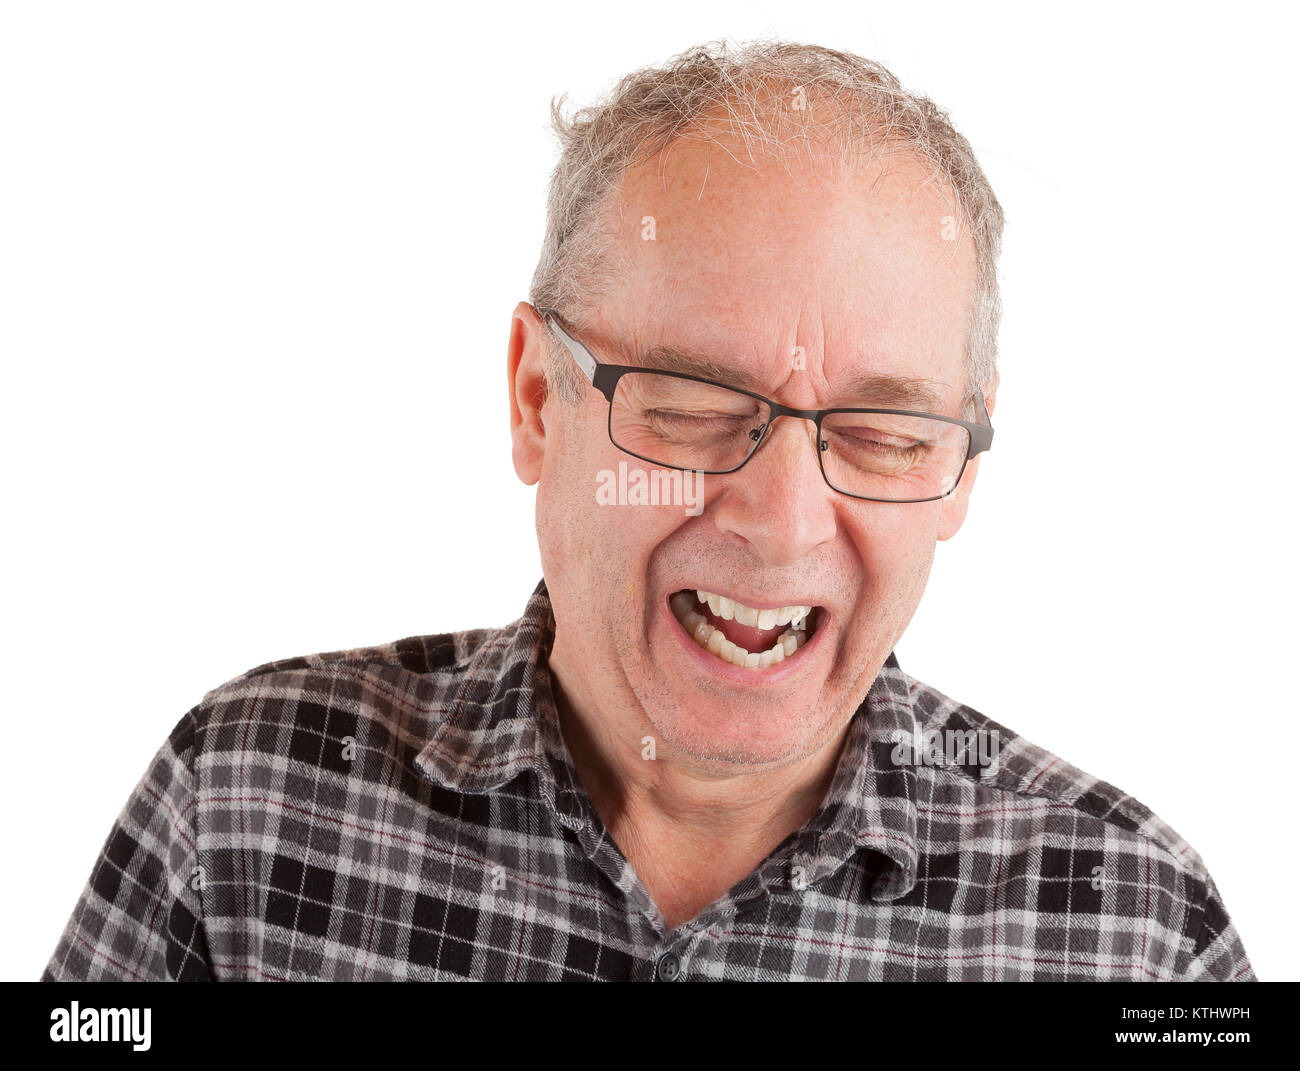 Man laughing hard Stock Photo